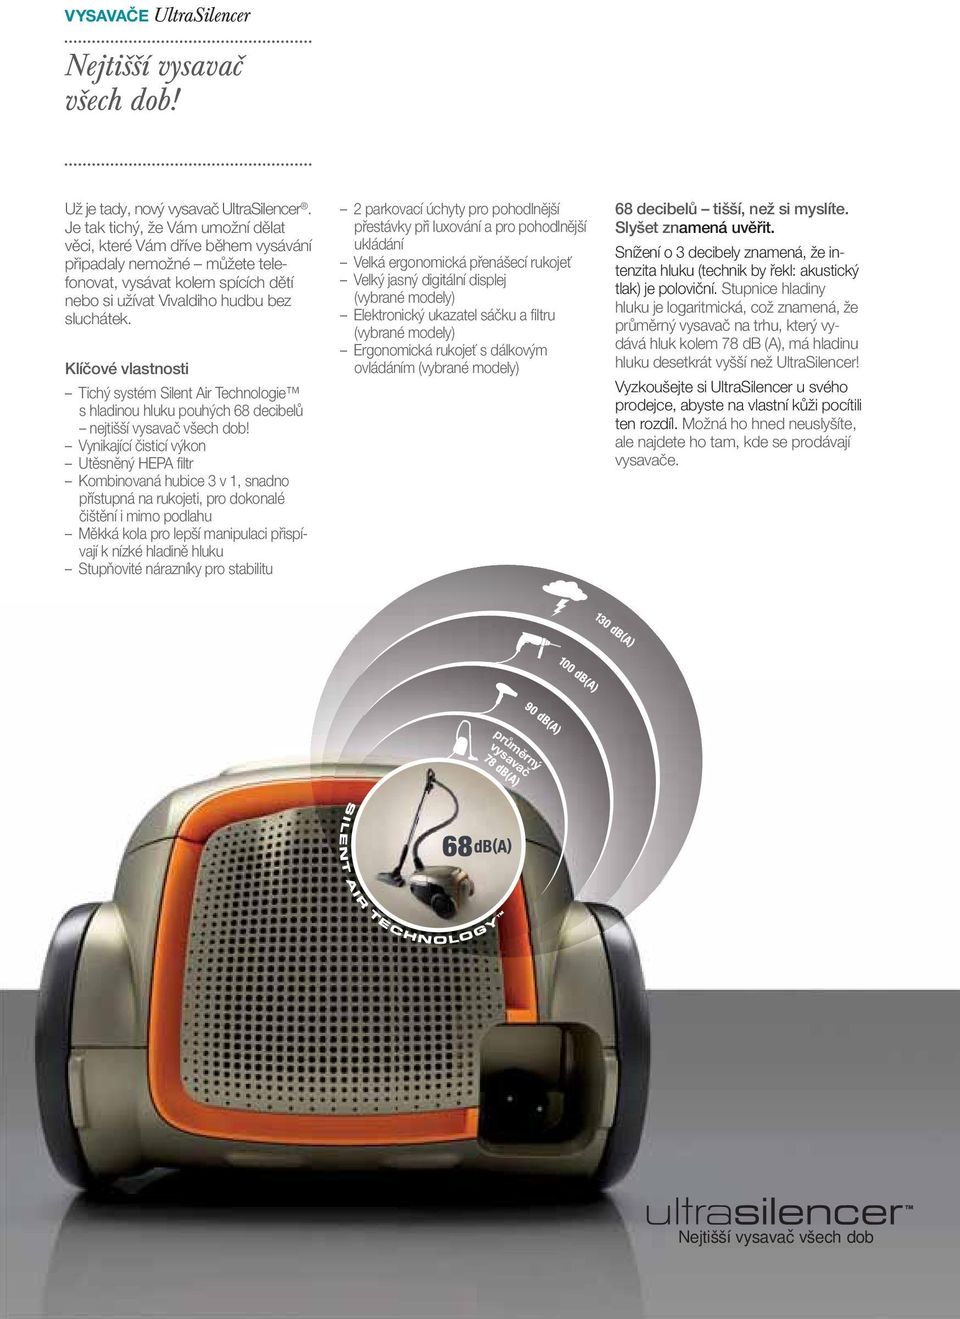 VYSAVAČE. Kolekce vysavačů Electrolux 2011 / Radujte se z úklidu. s  vysavači Electrolux. - PDF Stažení zdarma